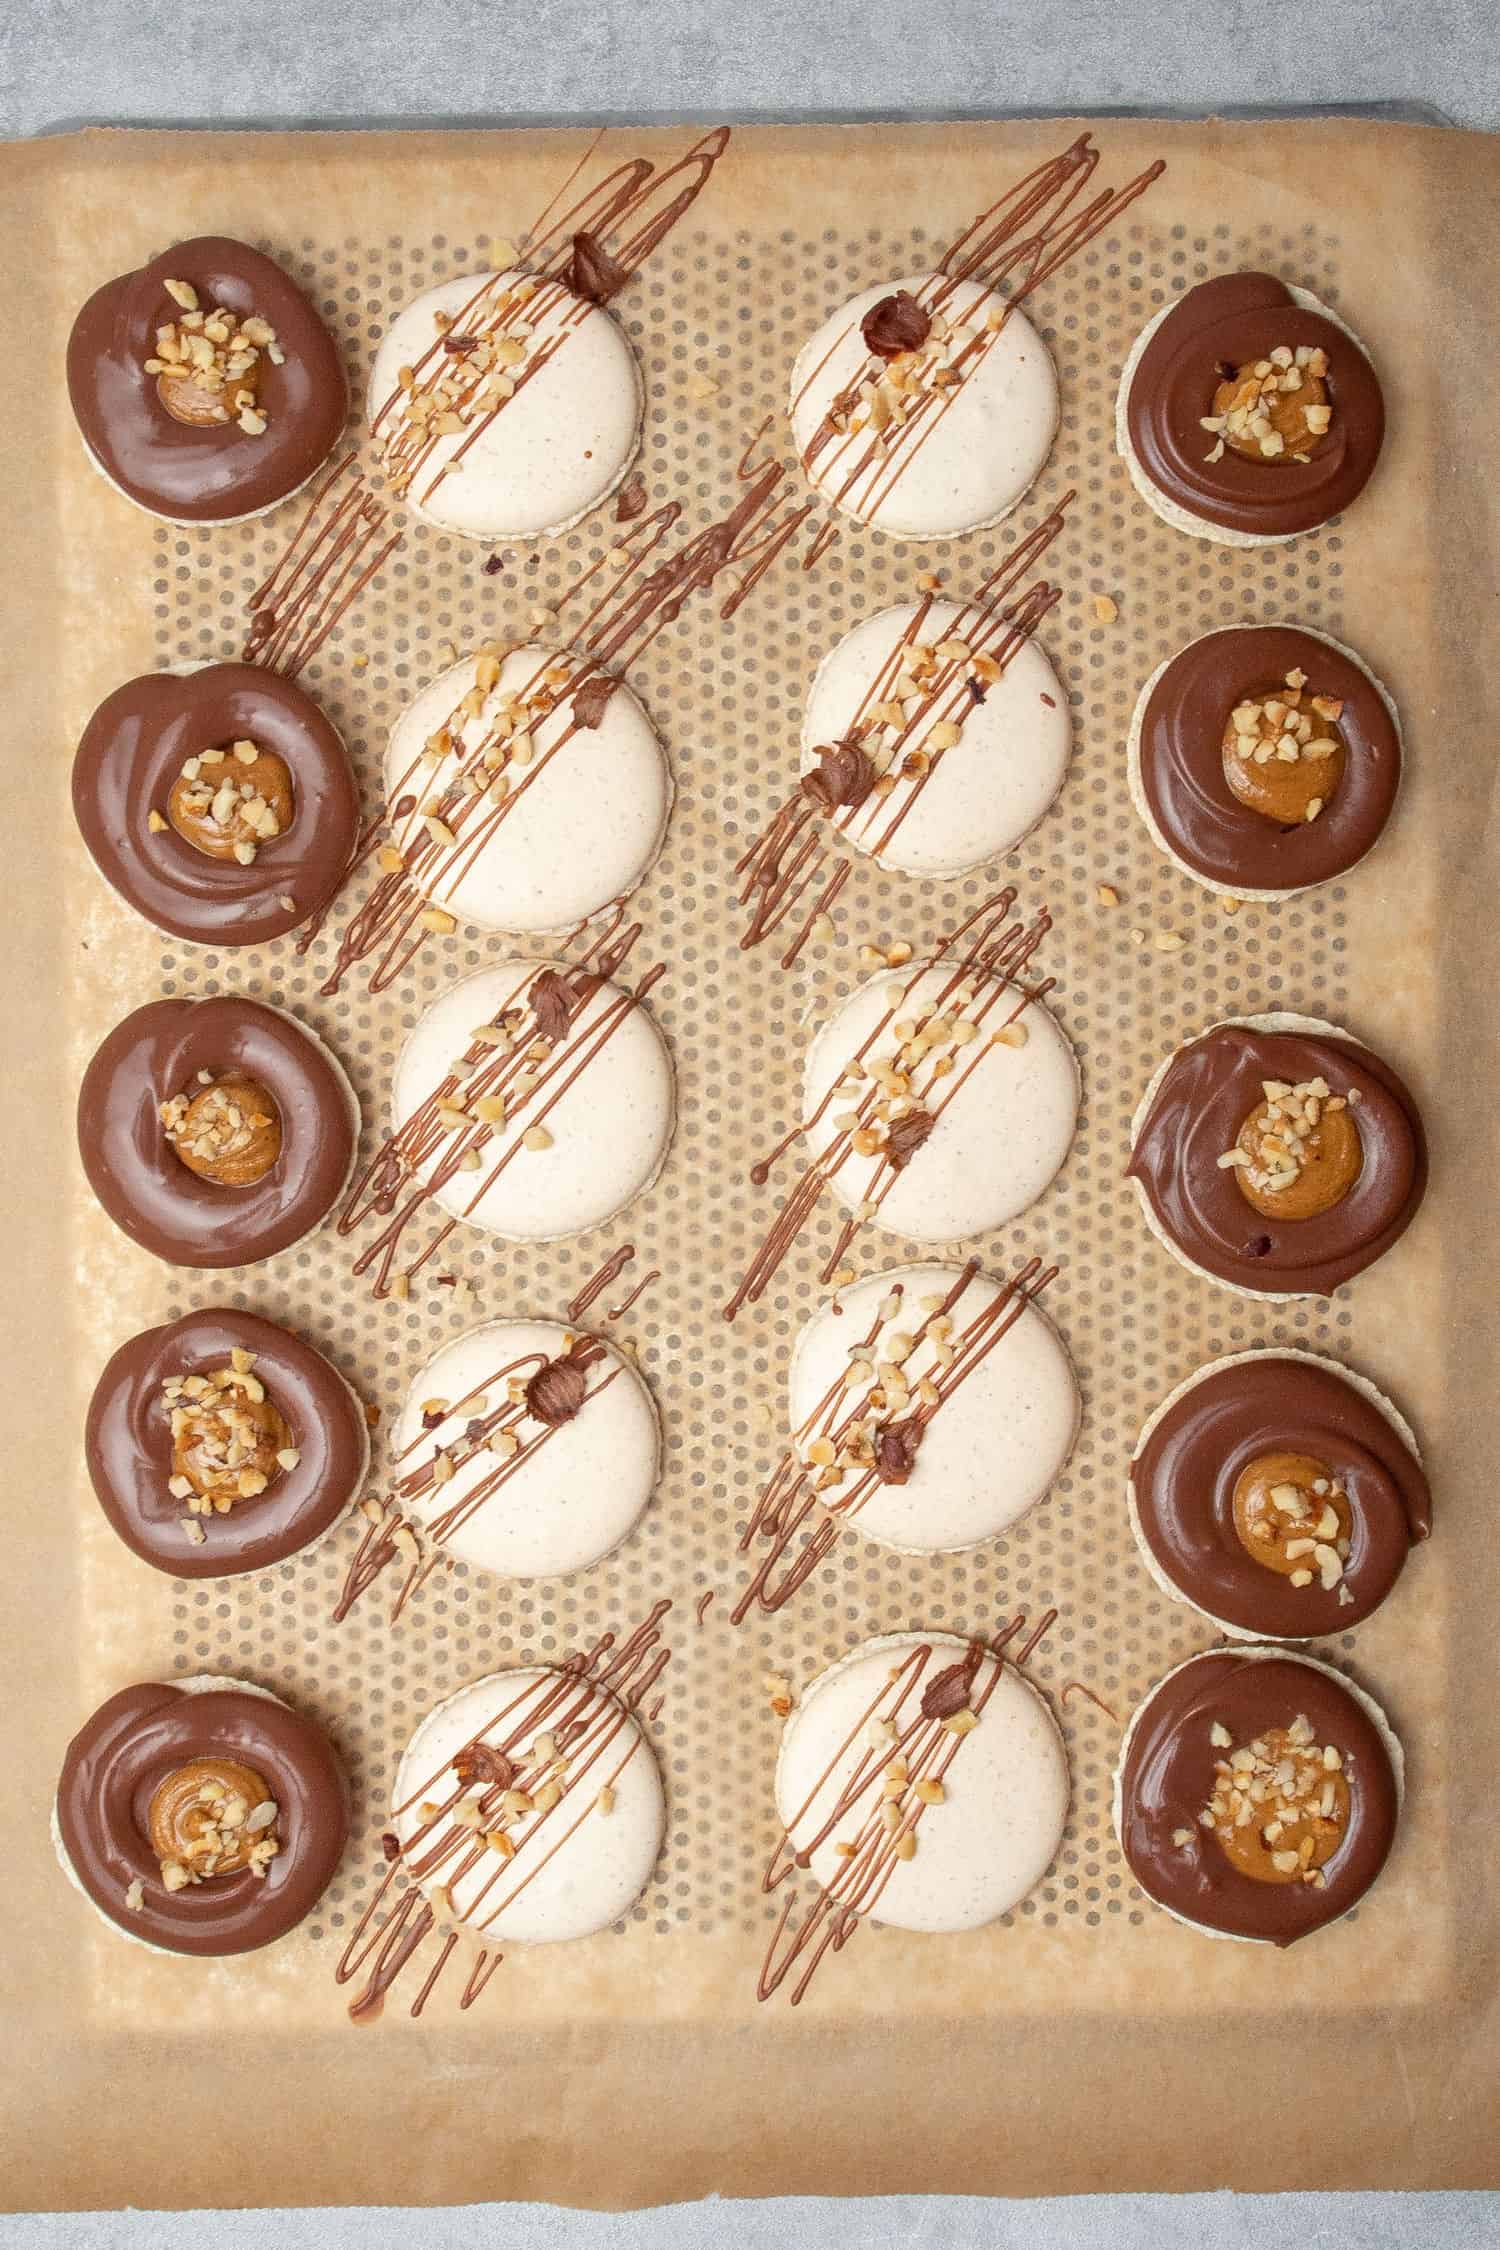 Chocolate hazelnut macaron